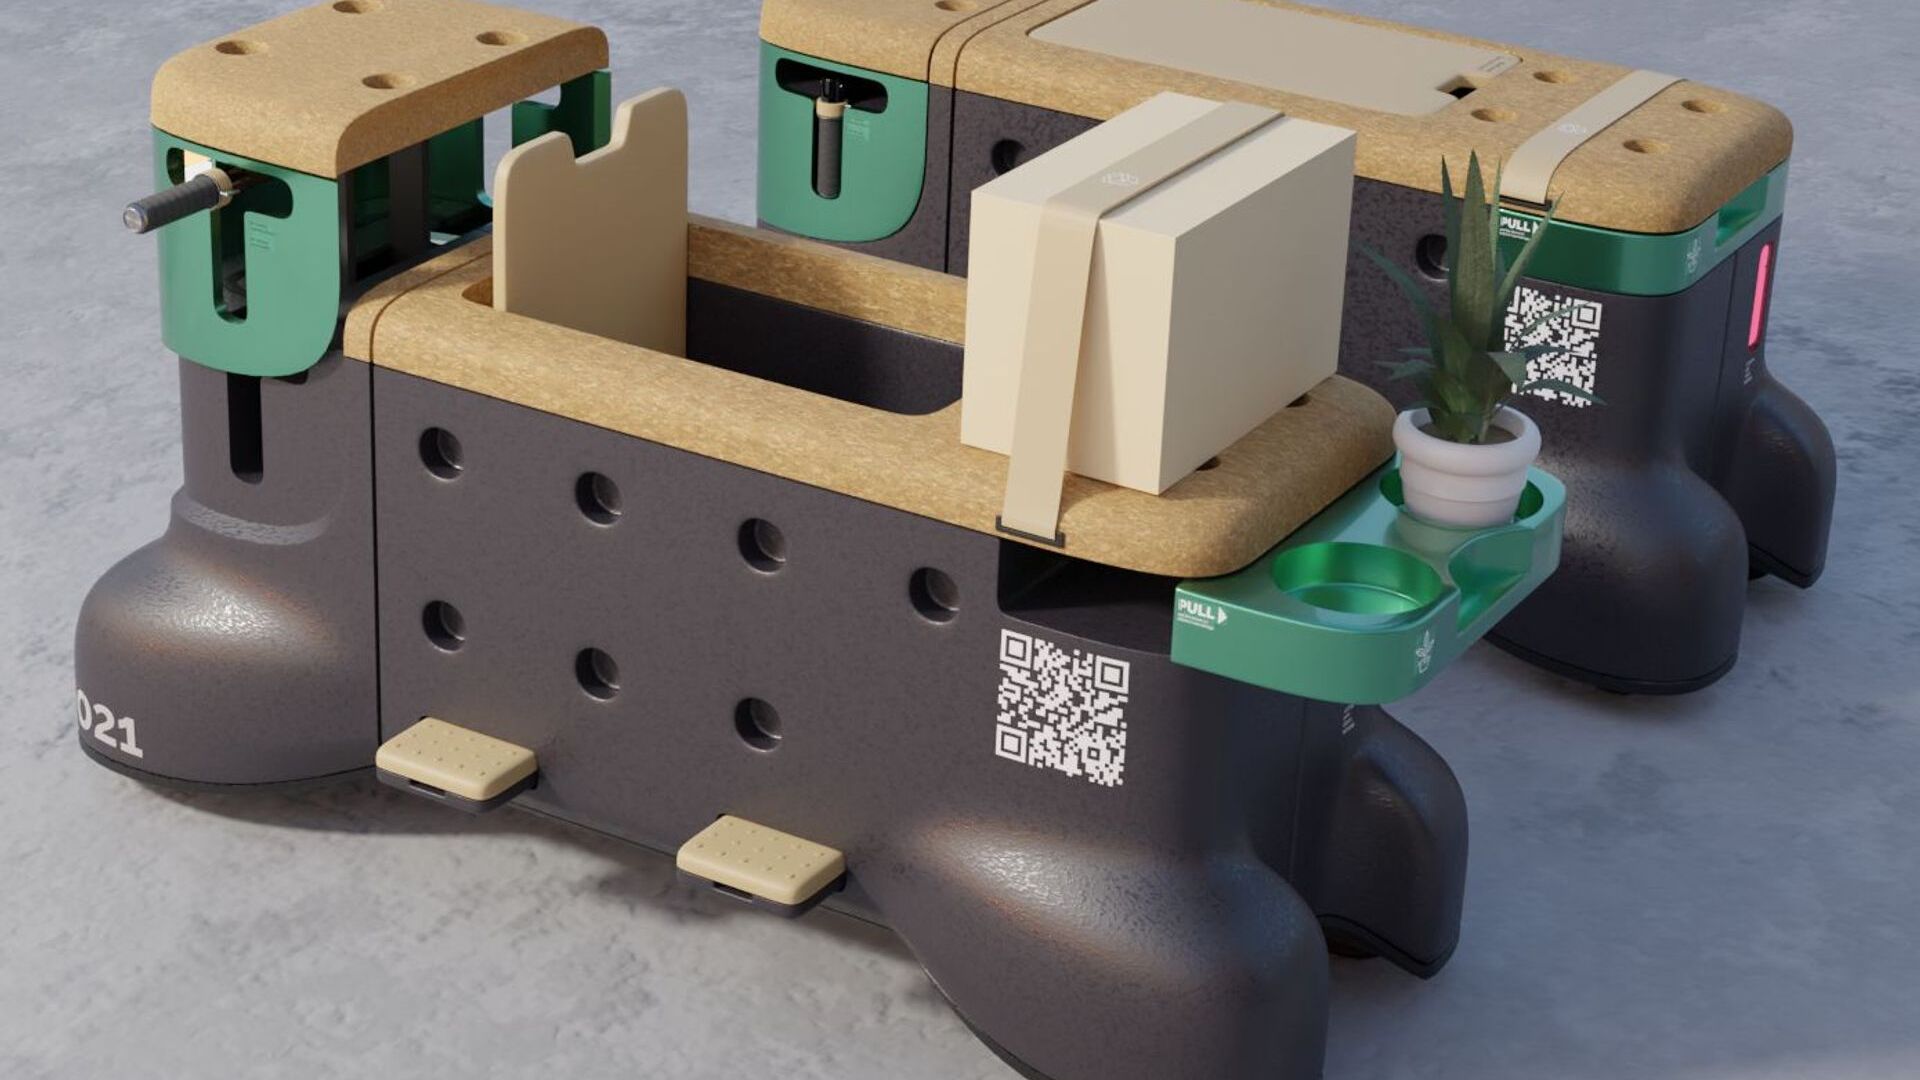 «TOD» — это скамья-самокат, созданная студентами-дизайнерами Корентином Жанелем и Гийомом Инноченти.